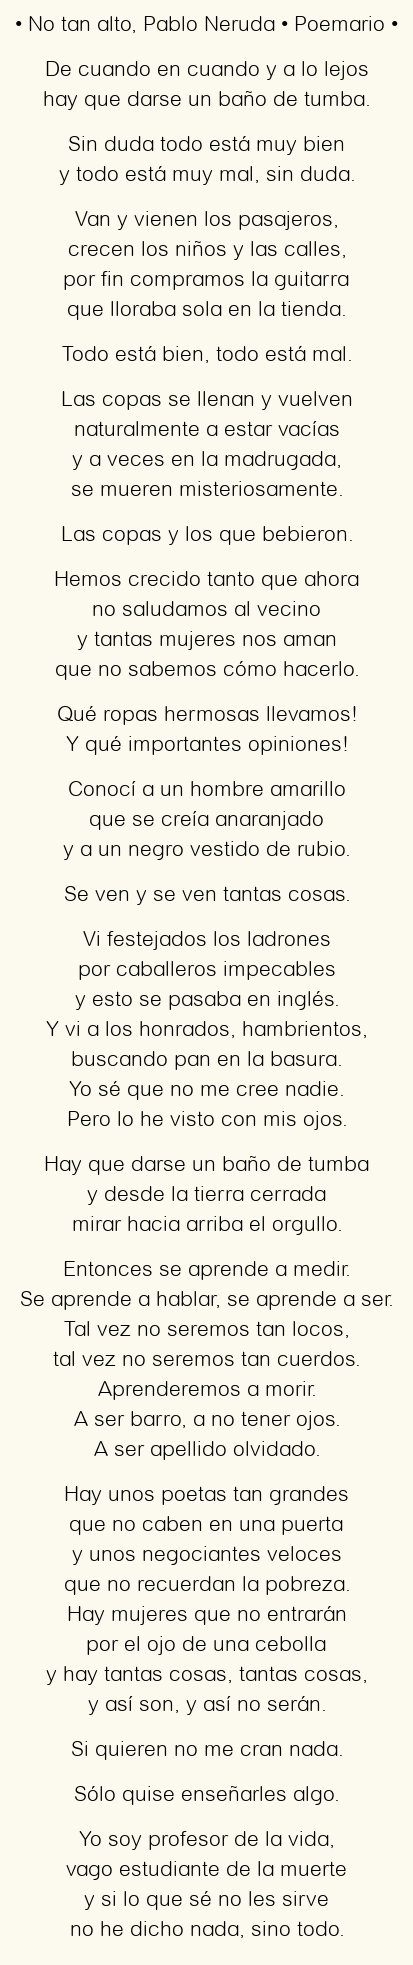 Imagen con el poema No tan alto, por Pablo Neruda